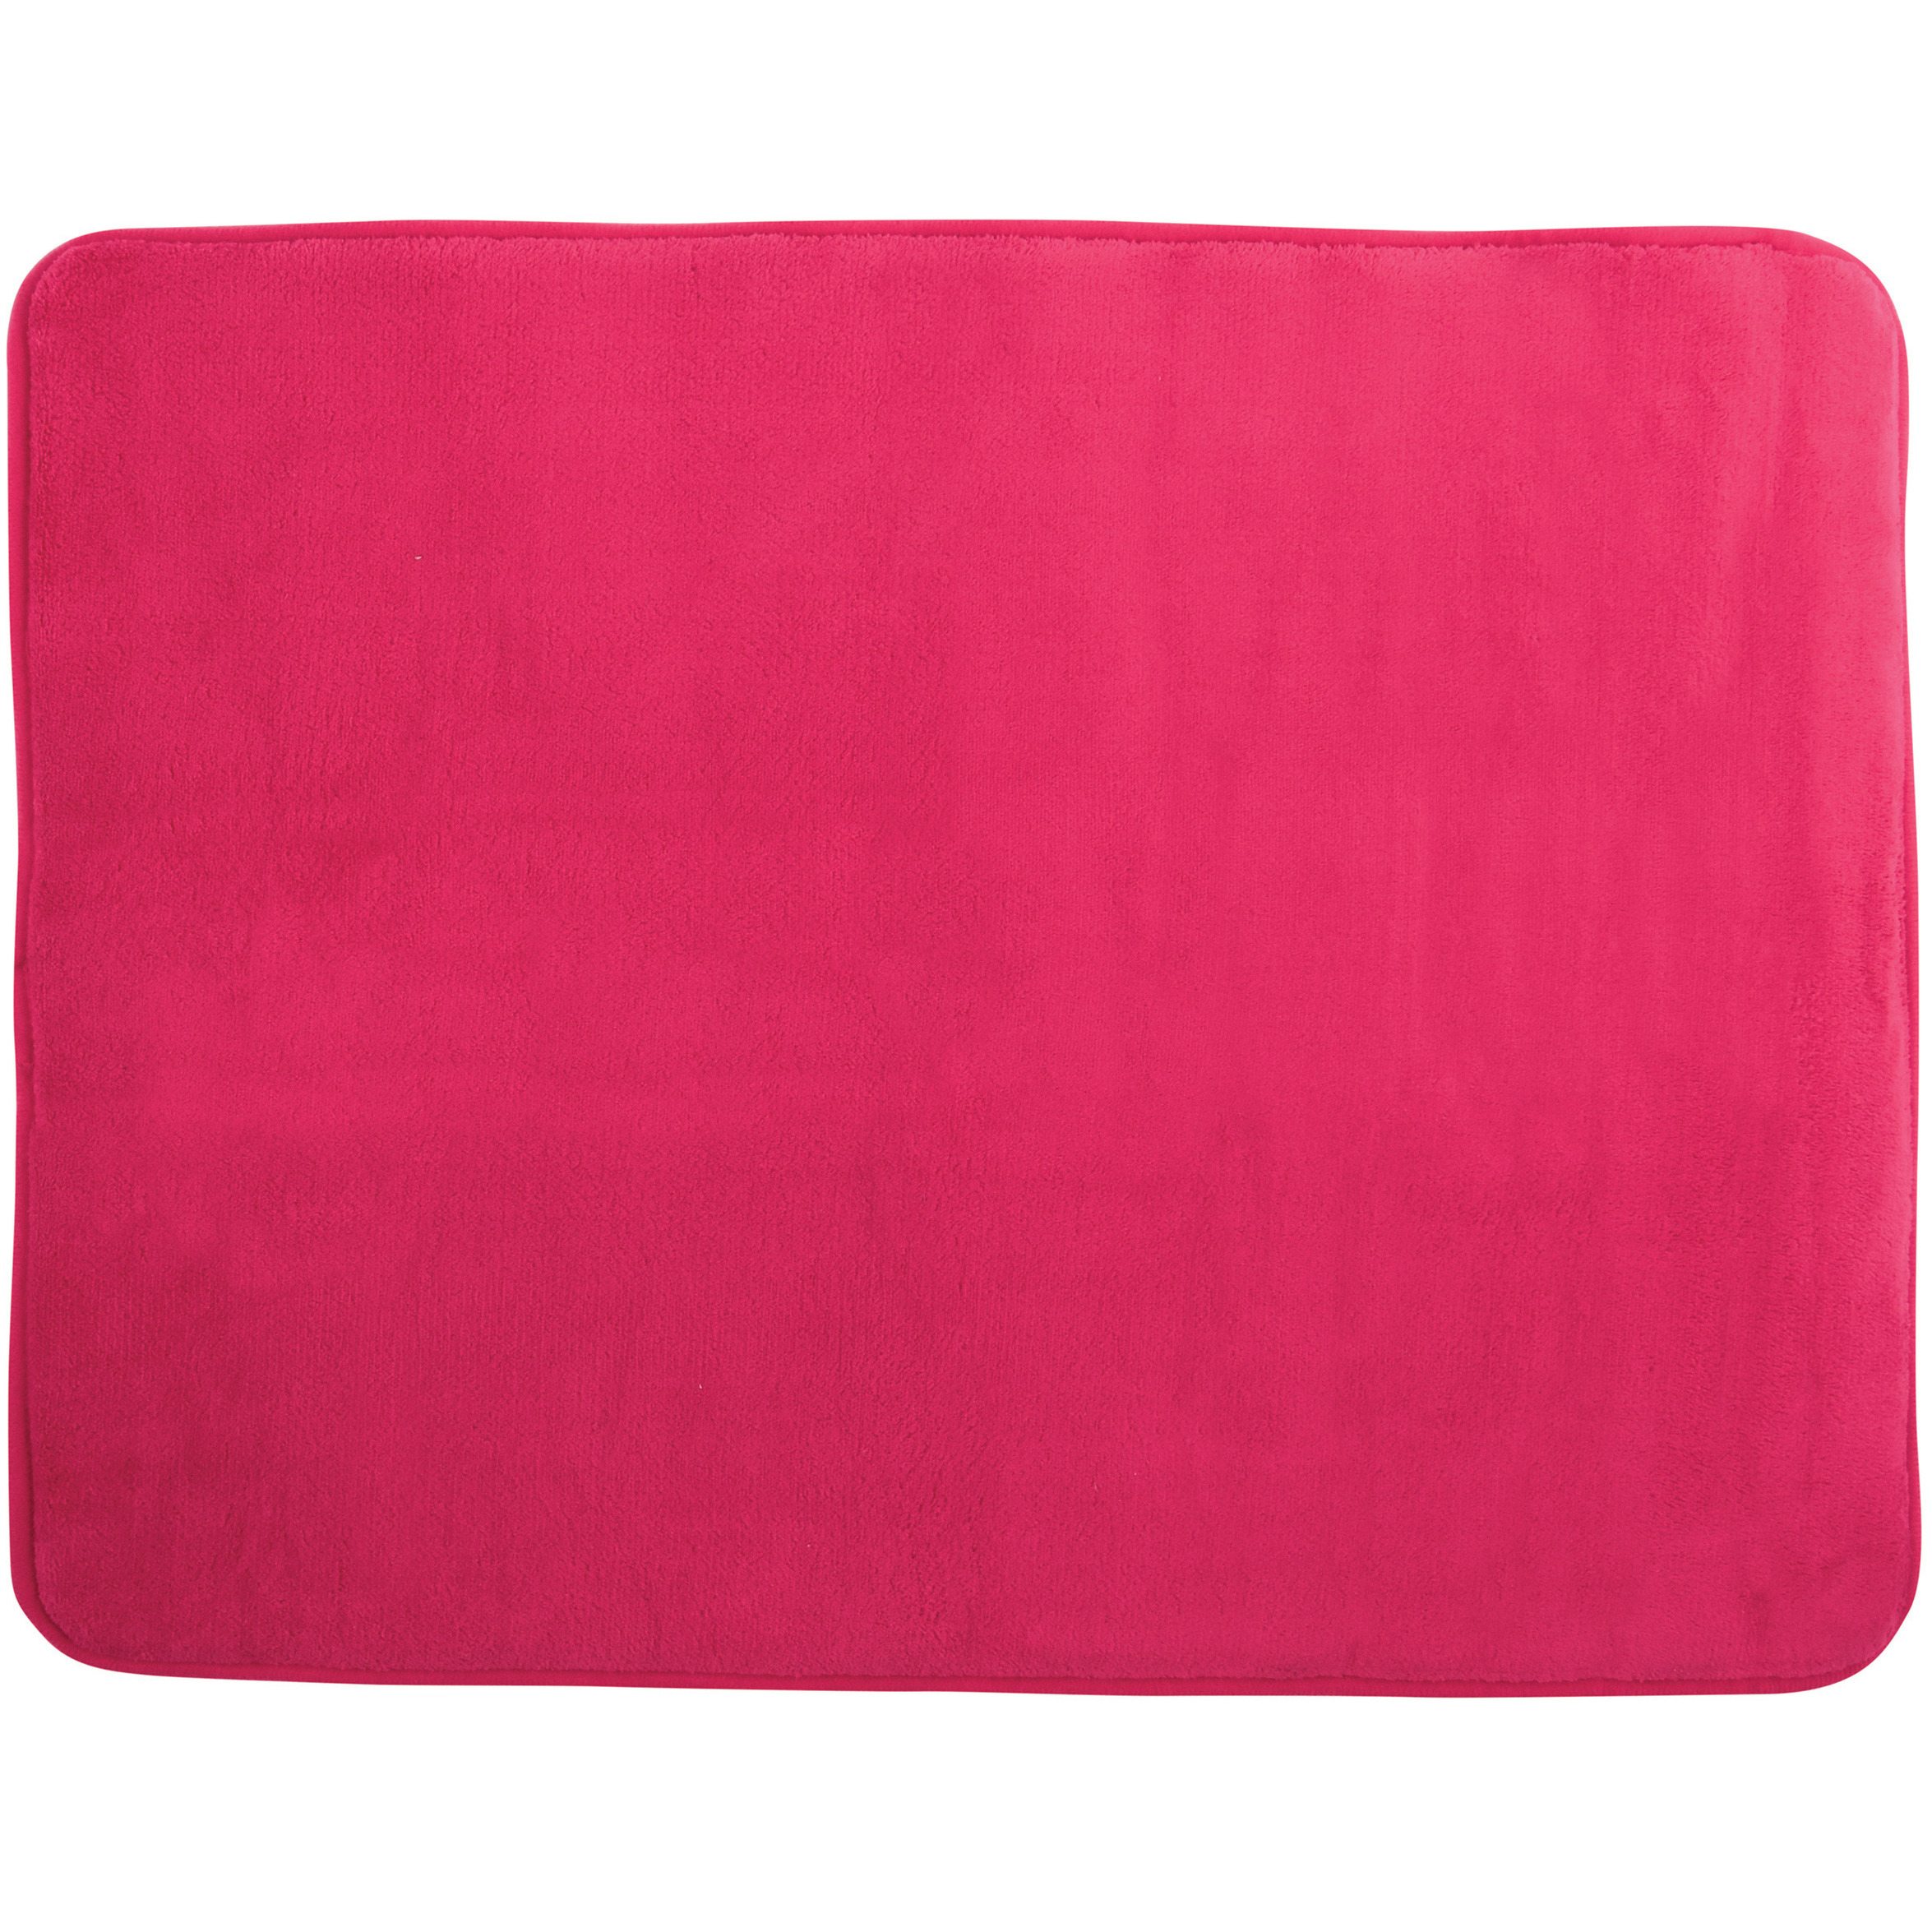 MSV Badkamerkleedje-badmat tapijt voor op de vloer fuchsia roze 50 x 70 cm